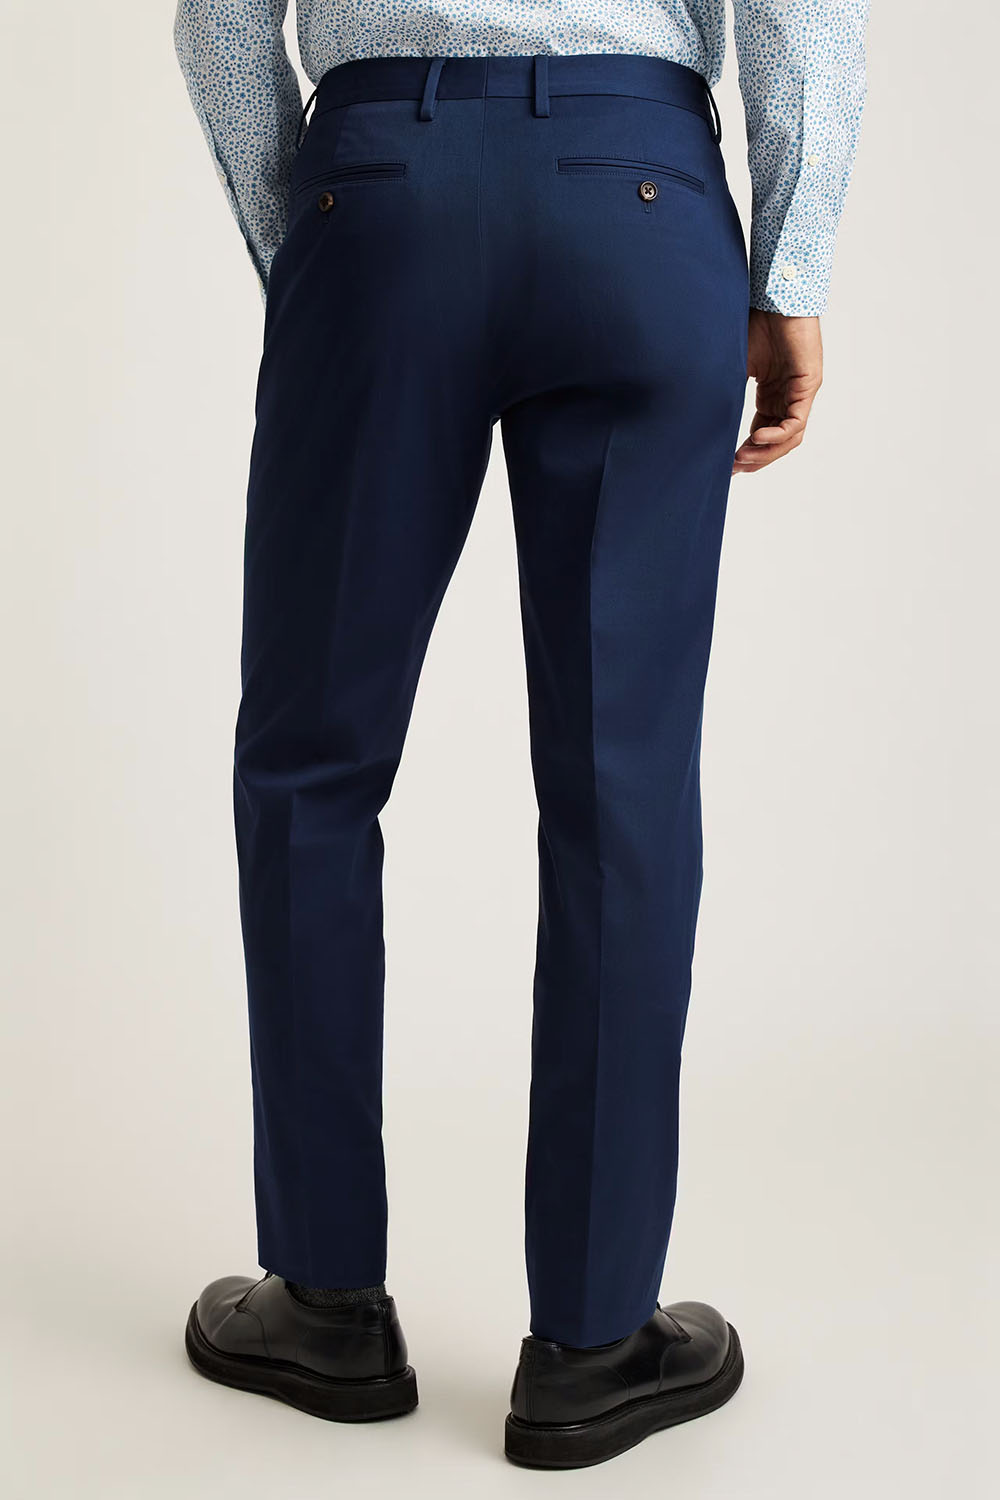 Bonobos - Italian Stretch Cotton Suit Pant - Royal Blue - Back